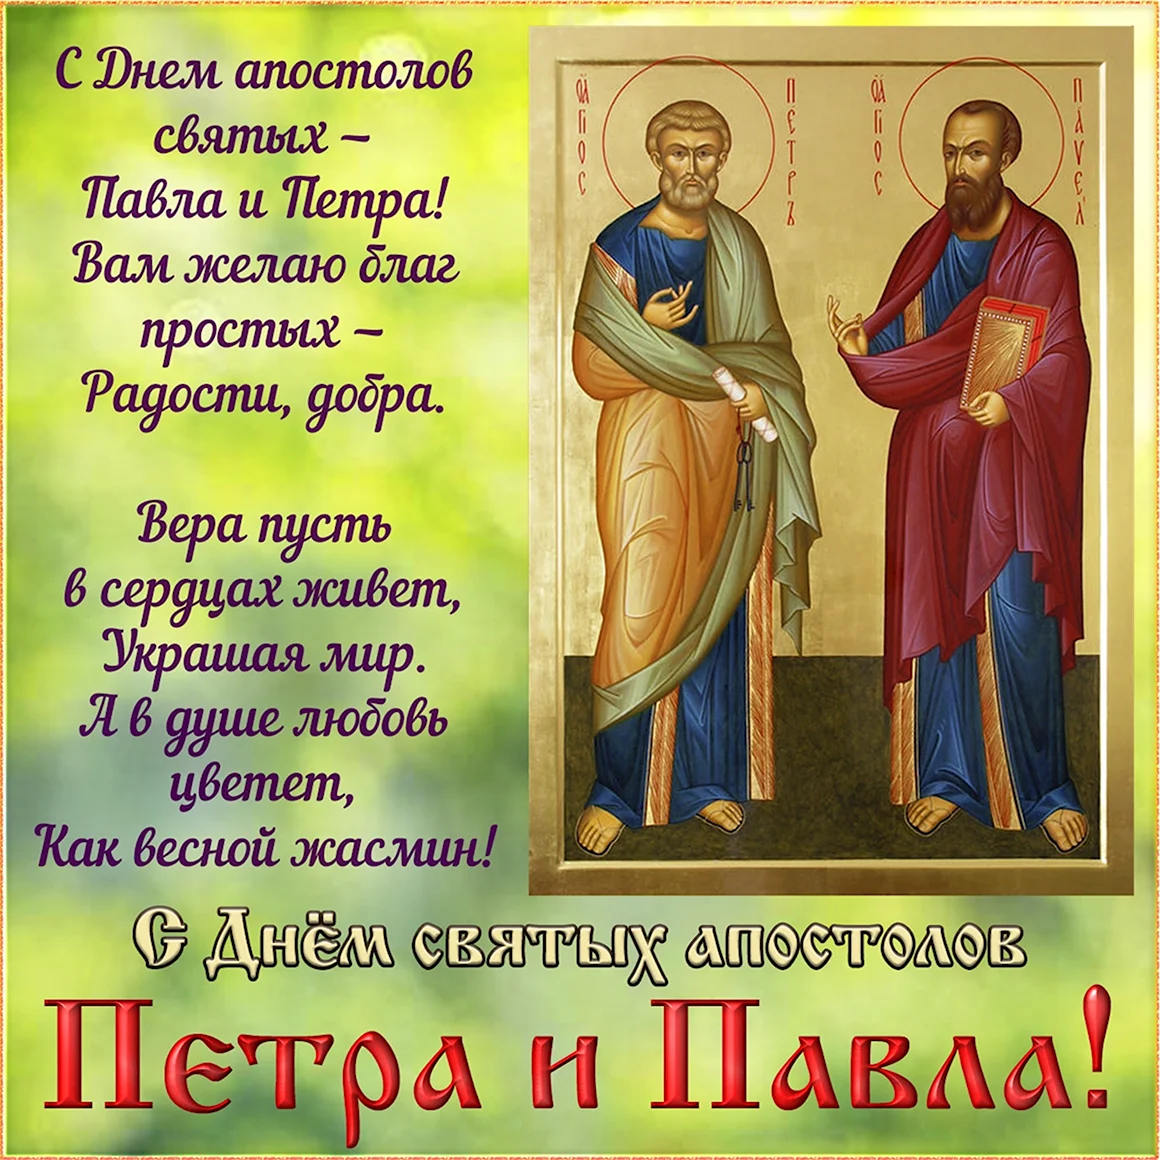 Сднем святые апостололов Петра и Павла